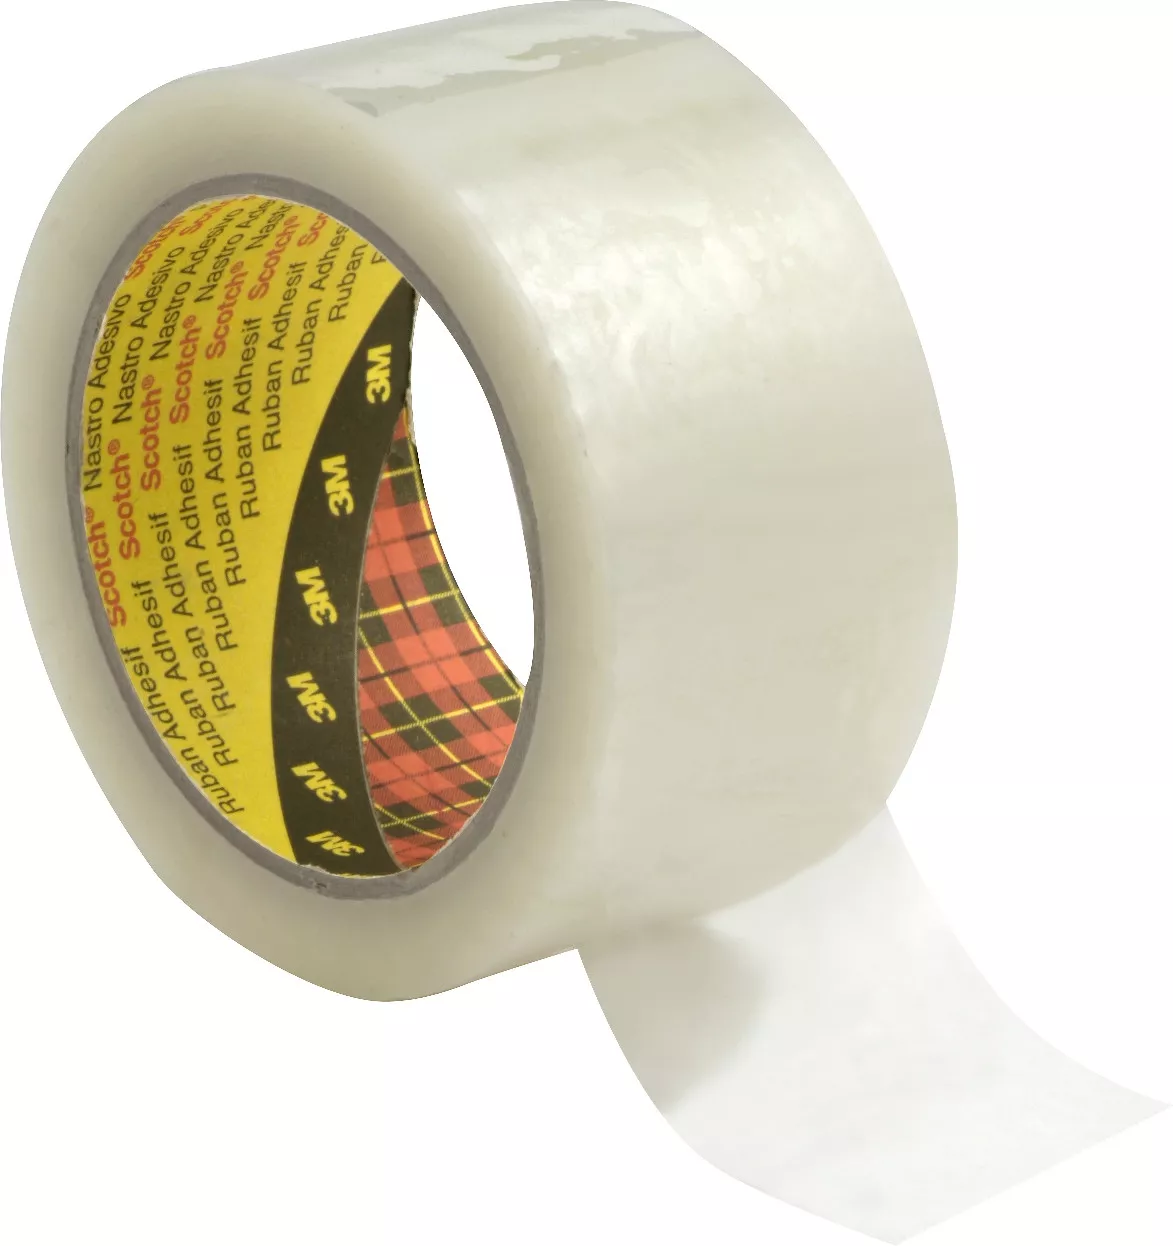 Scotch® Custom Printed Box Sealing Tape 371CP, Clear, 48 mm x 100 m,
36/Case